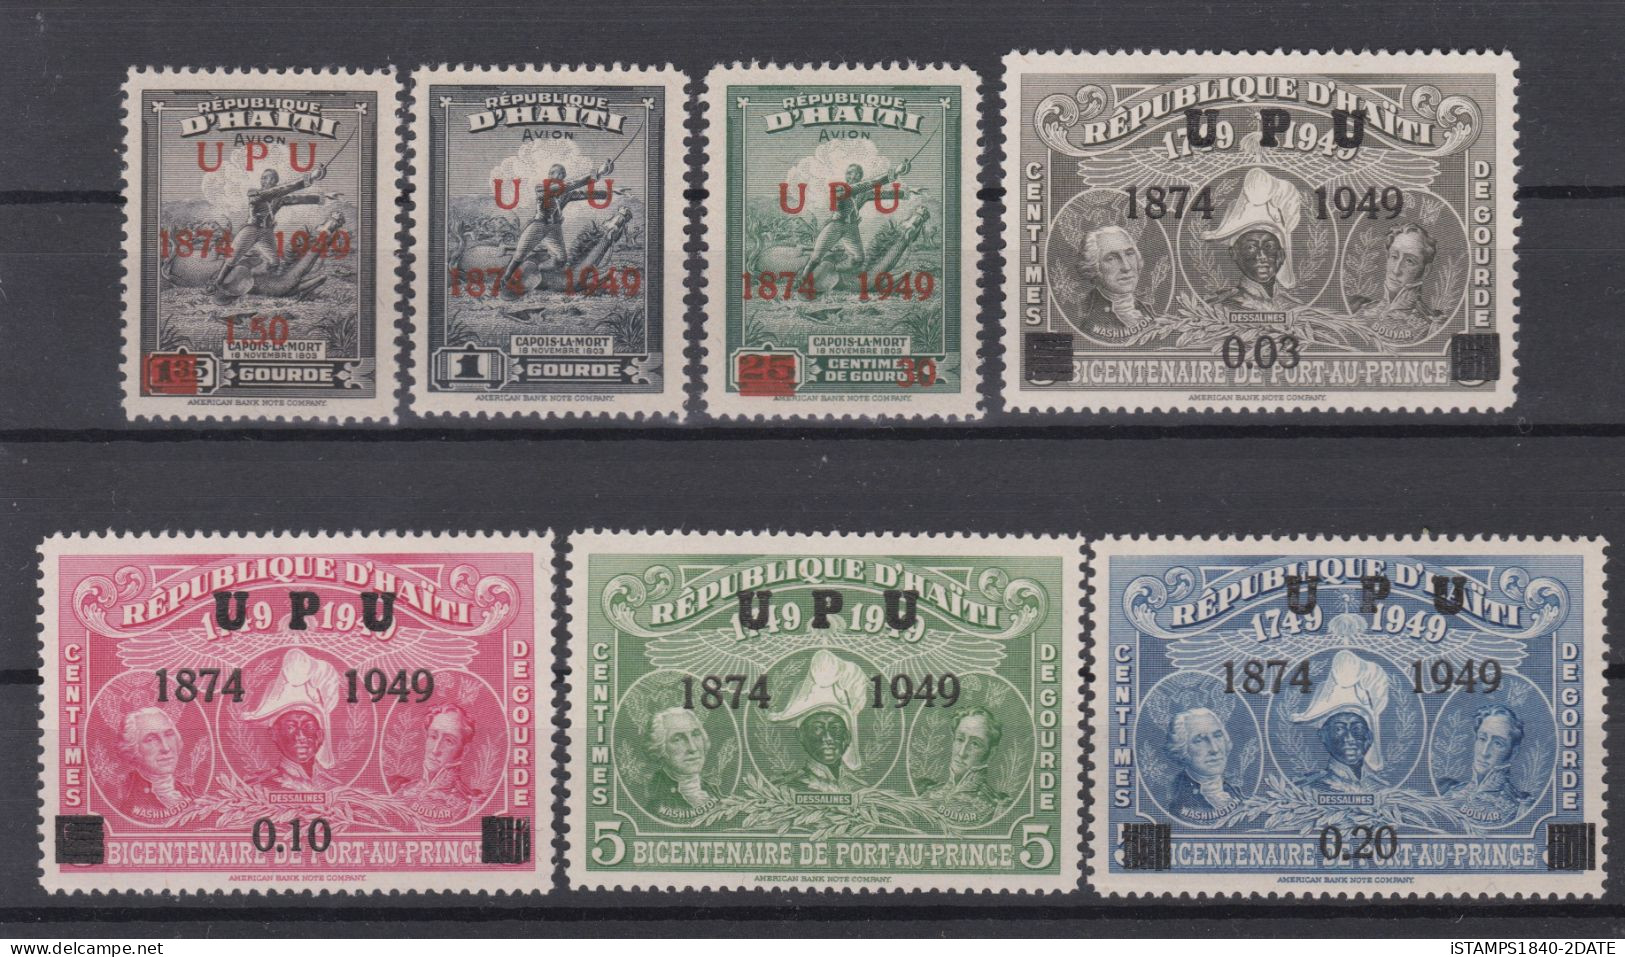 001109/ Haiti 1949 U.P.U MNH Set - Haiti